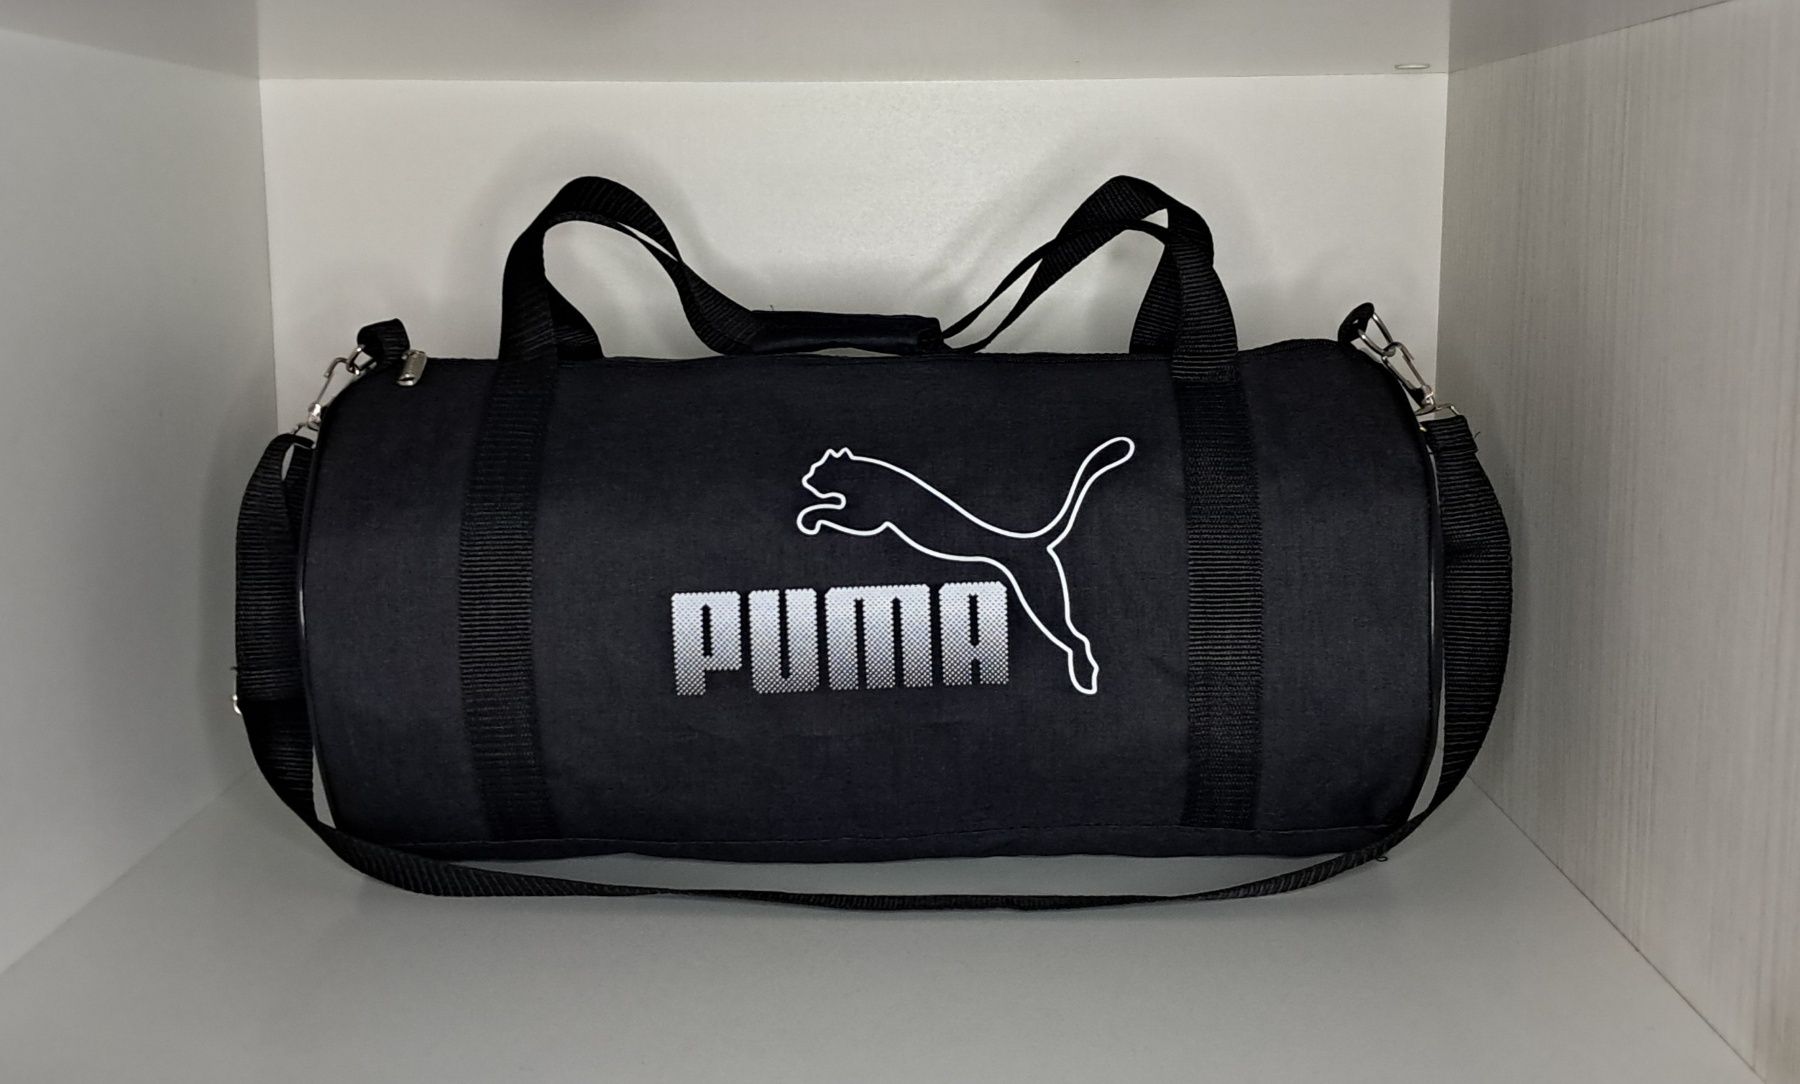 Компактная  спортивная сумка Puma